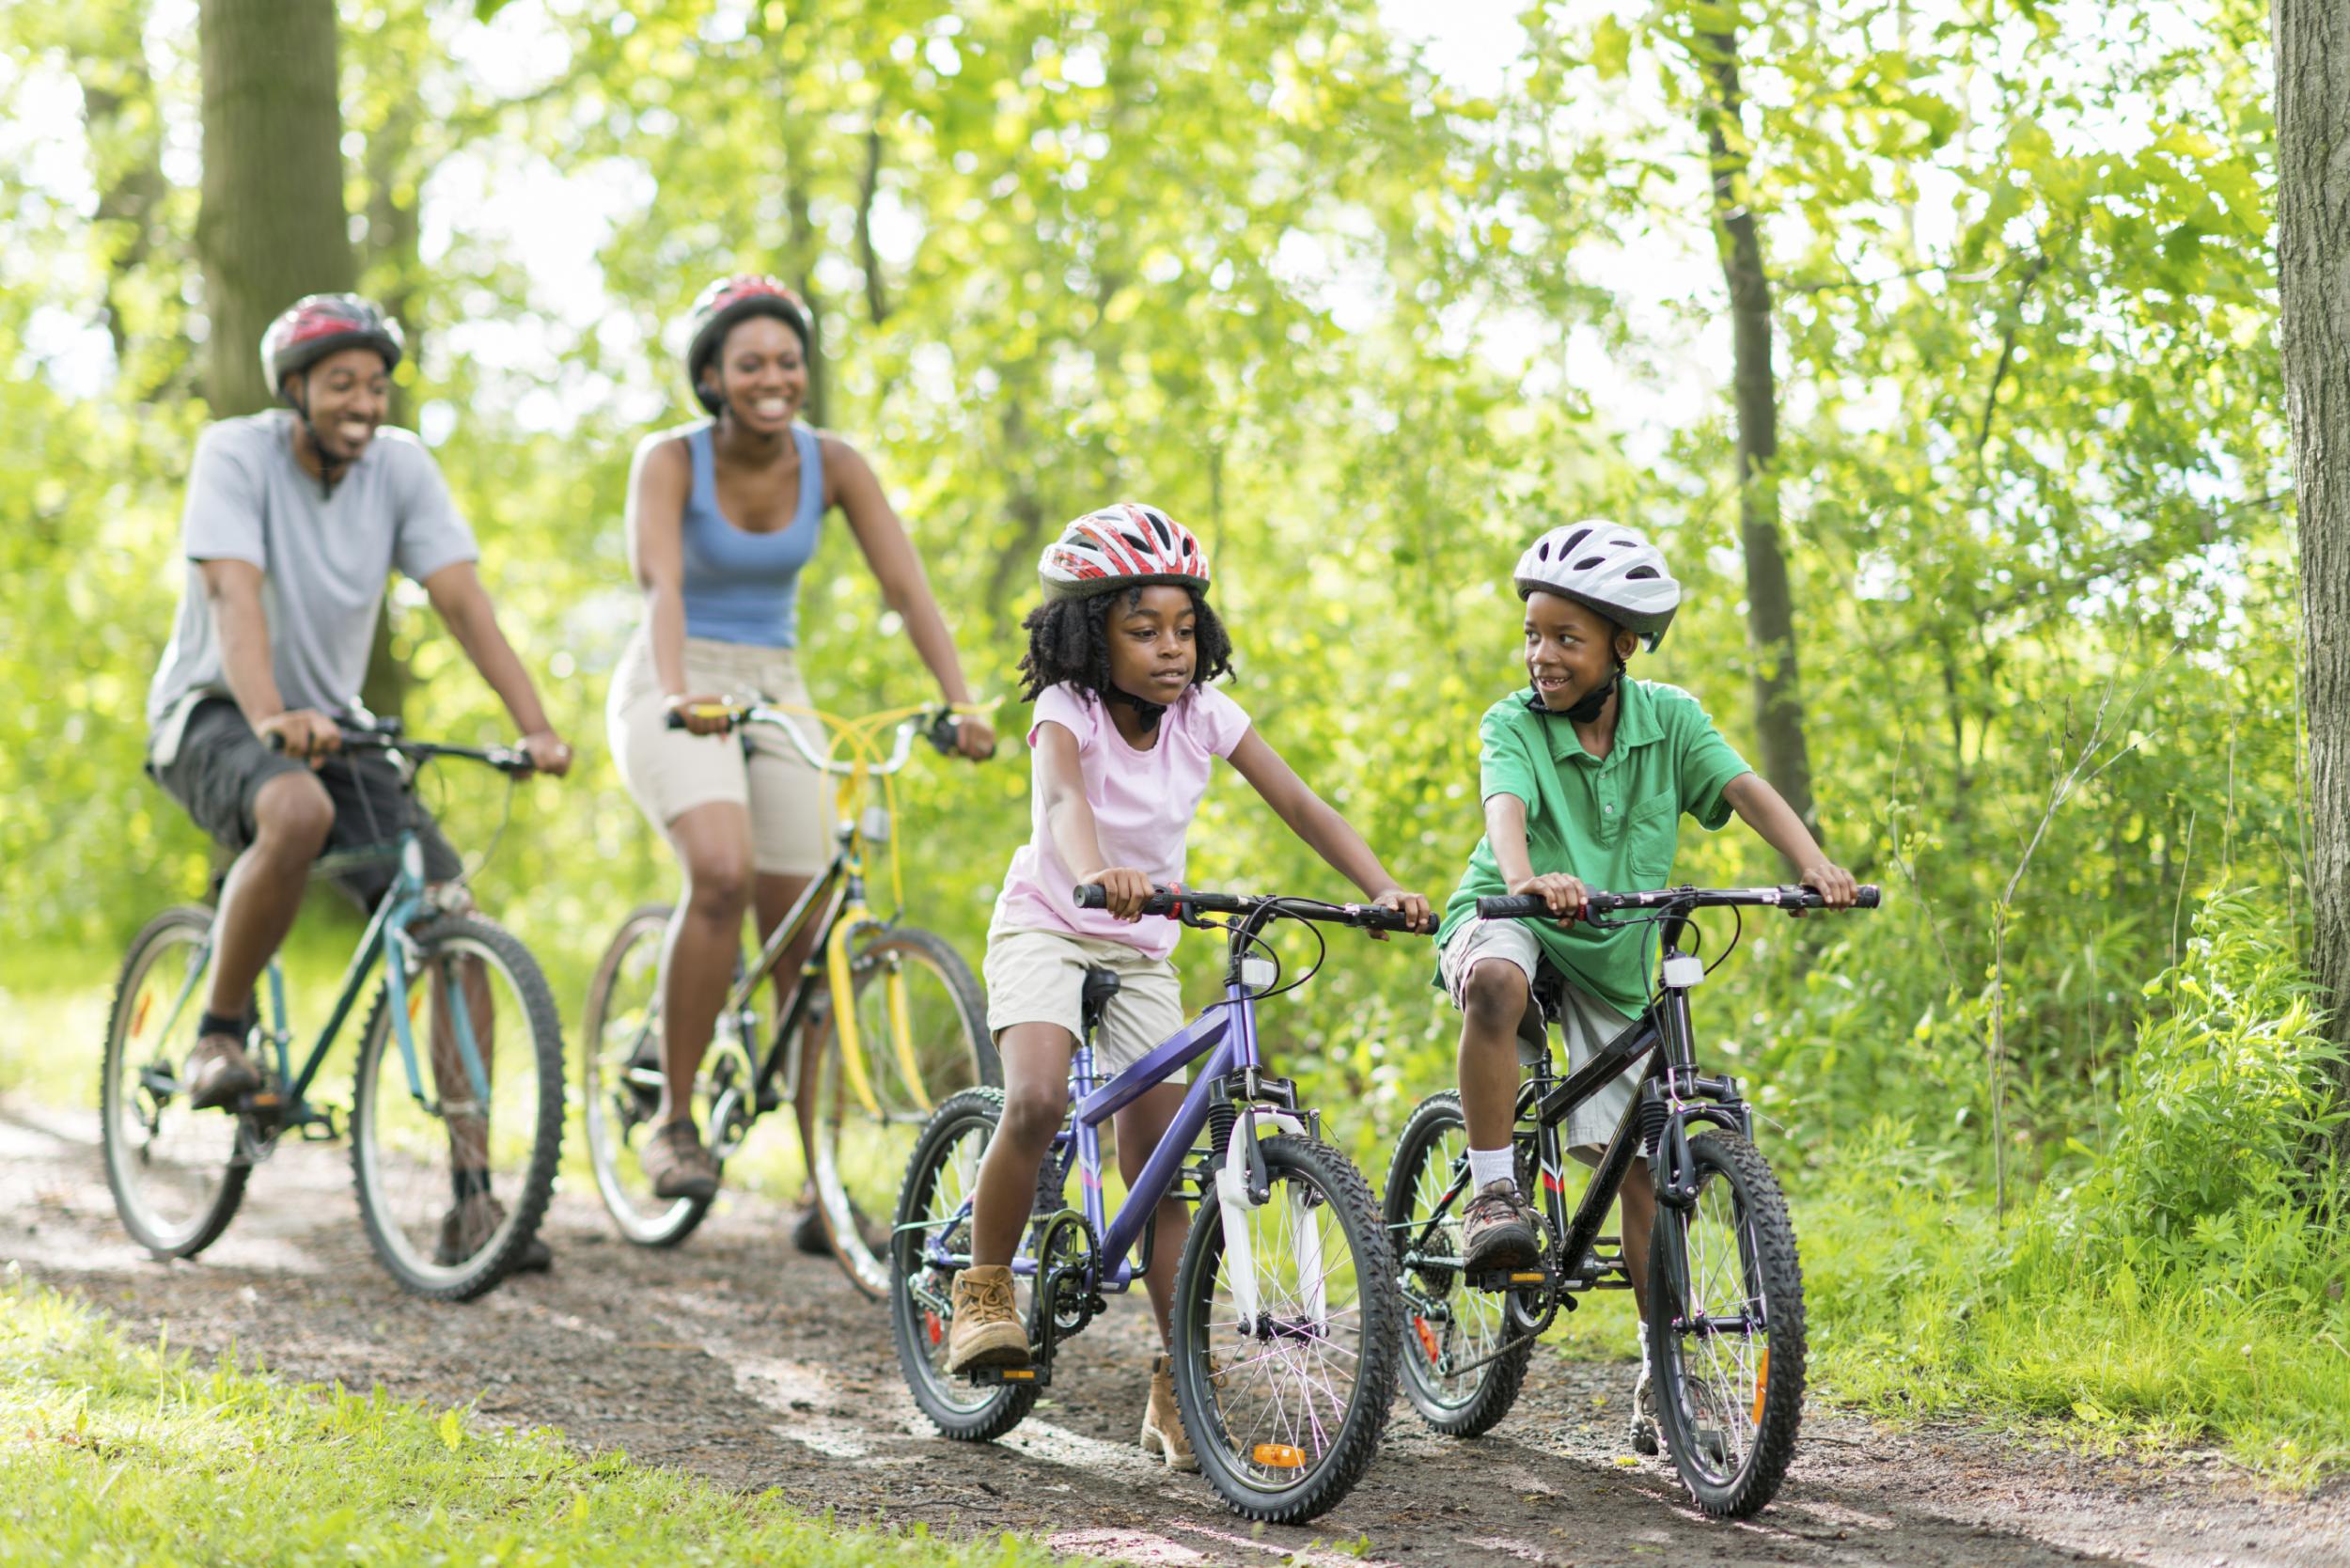 Едим на свежем воздухе. Прогулка на природе. Велосипед на природе. Прогулка на велосипеде. Семья на велосипедах.